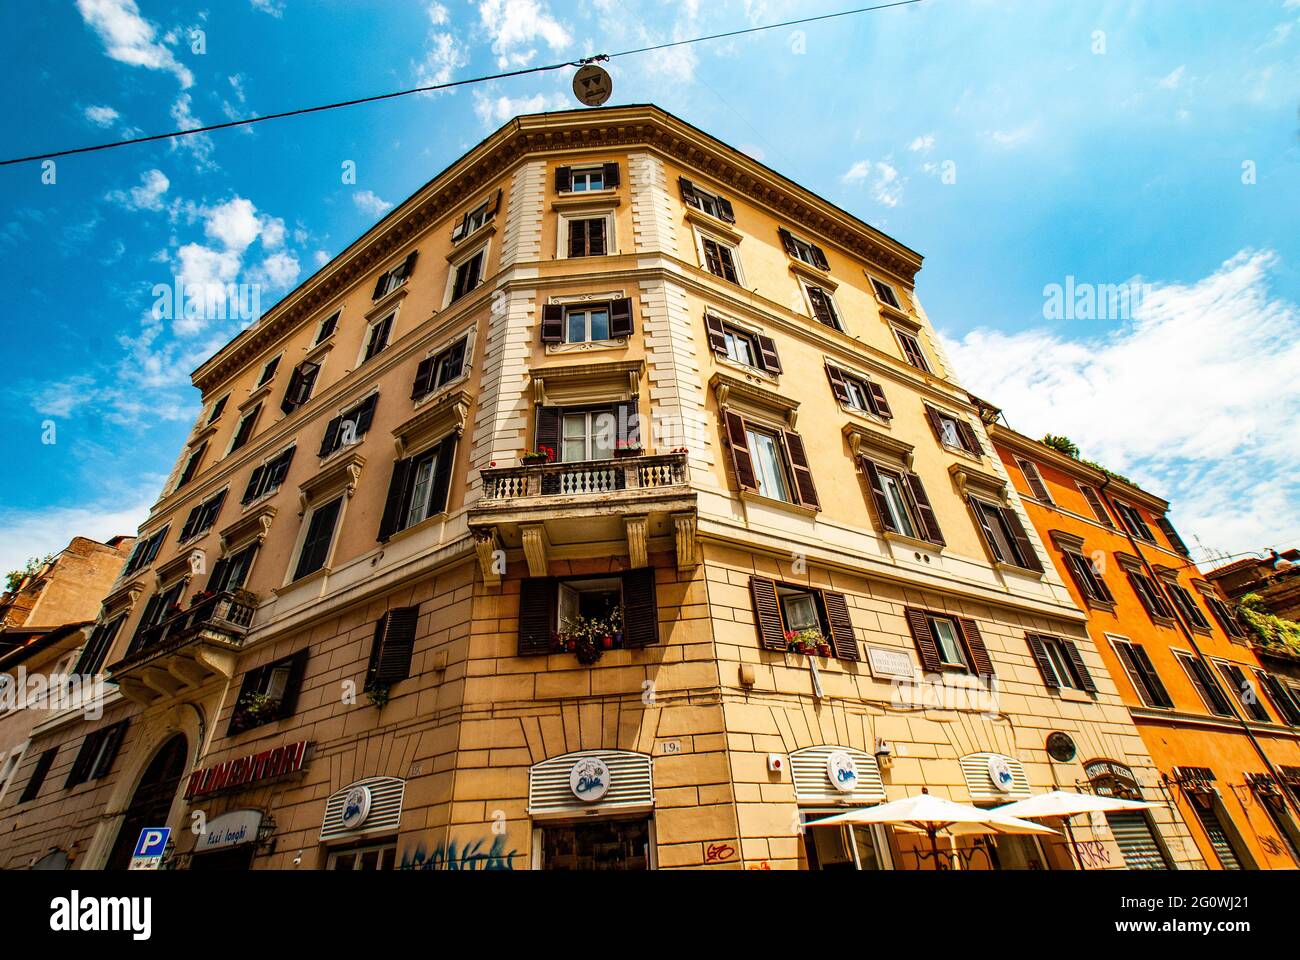 Gemütliche alte Straßen in Trastevere im Mai 2021, Rom, Italien. Trastevere Viertel von Rom, am Westufer des Tibers, Architektur und Wahrzeichen von Stockfoto